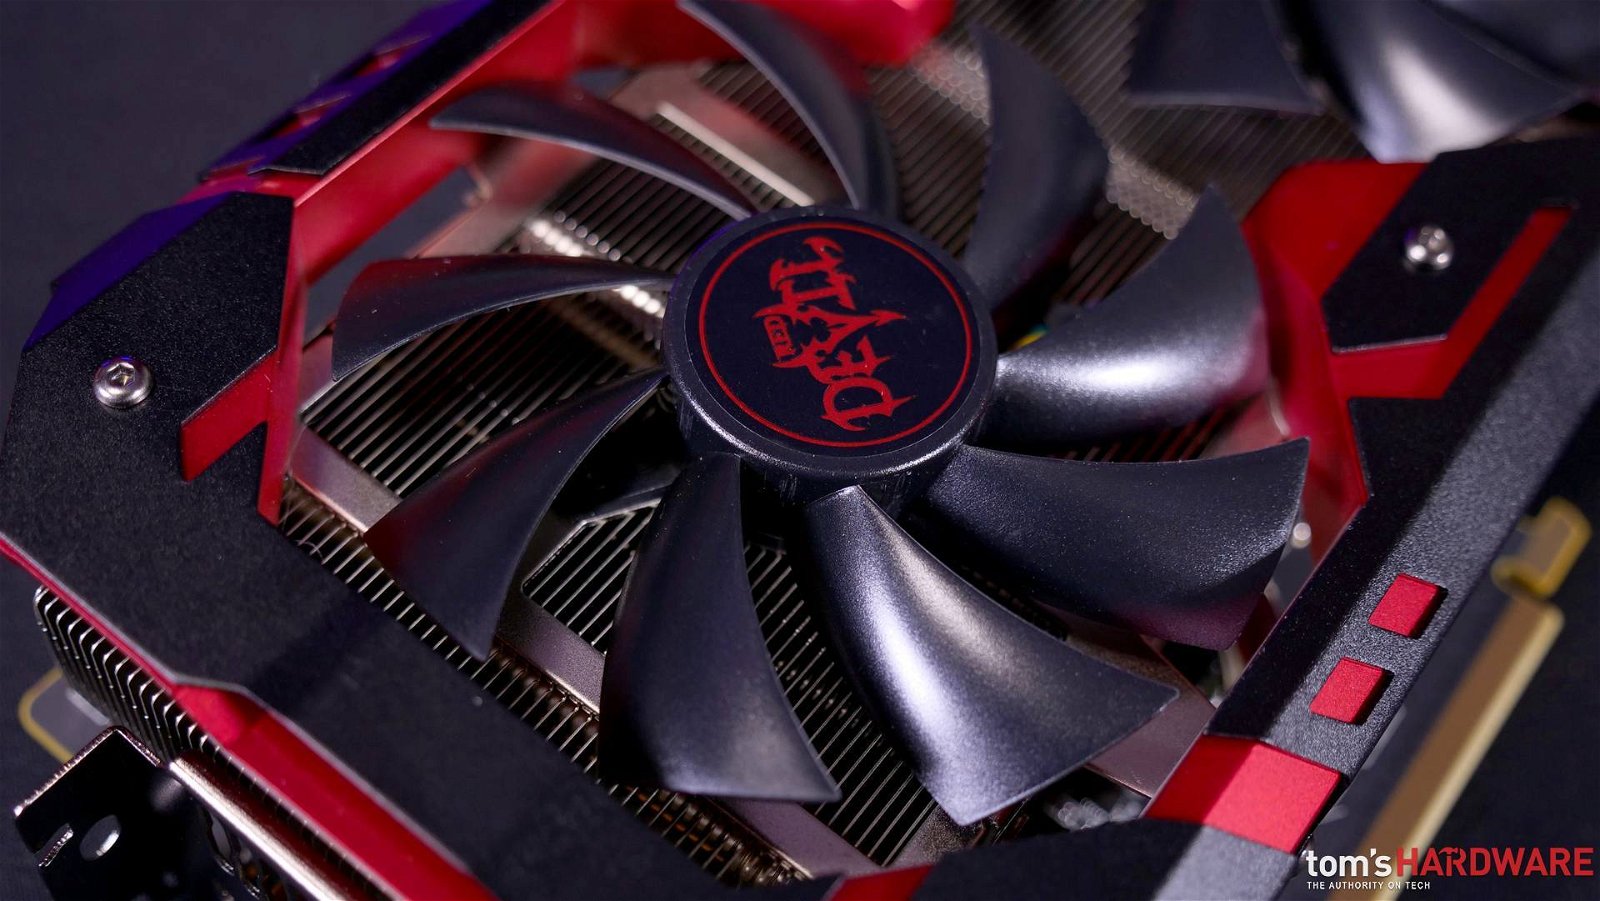 Immagine di Recensione AMD Radeon RX 590, la GPU Polaris passa ai 12 nanometri